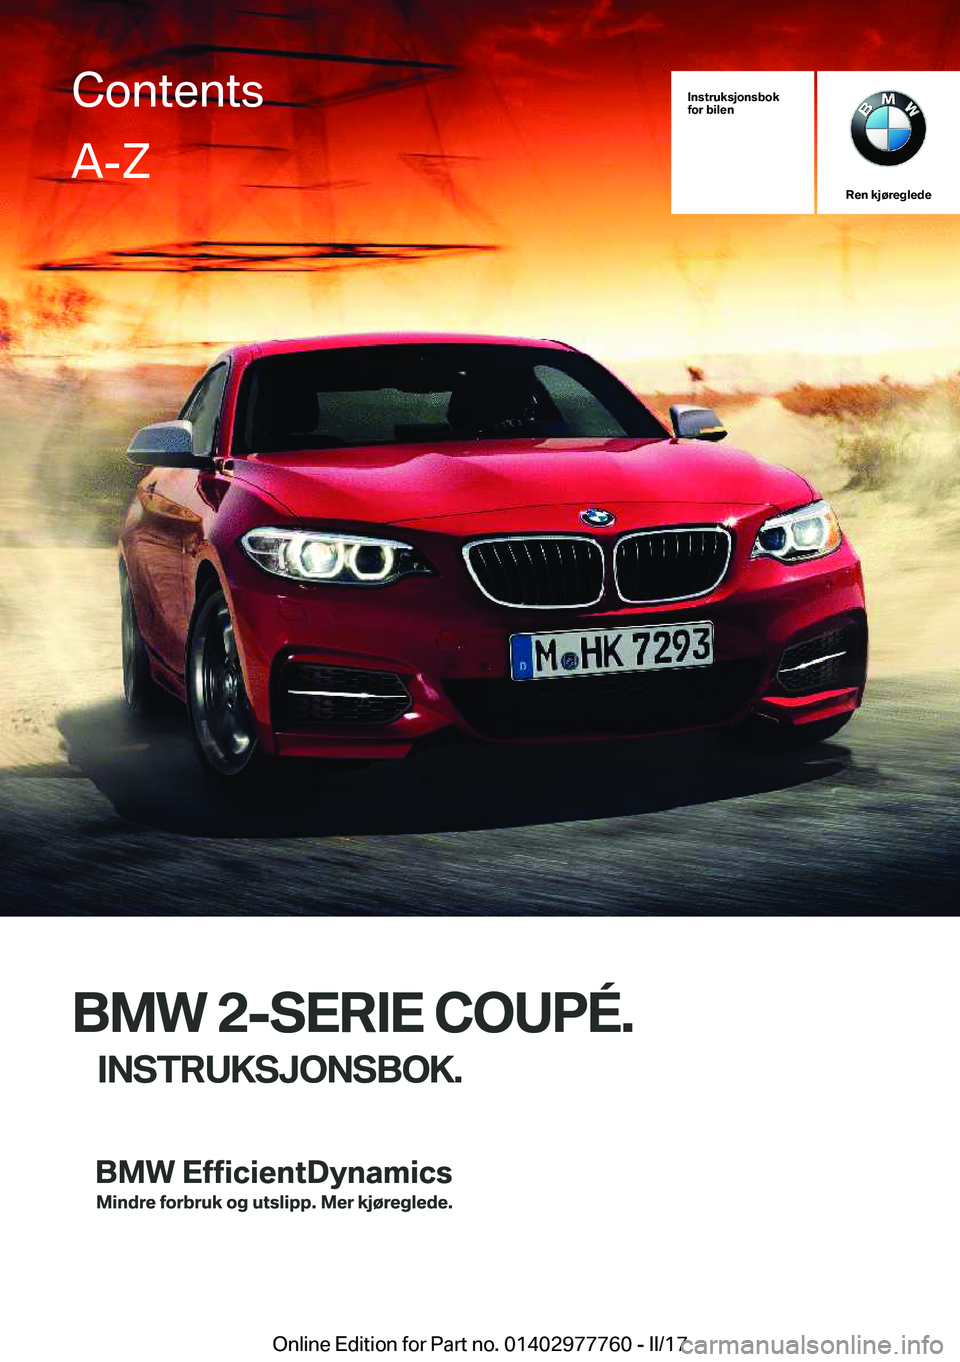 BMW 2 SERIES COUPE 2017  InstruksjonsbØker (in Norwegian) �I�n�s�t�r�u�k�s�j�o�n�s�b�o�k
�f�o�r��b�i�l�e�n
�R�e�n��k�j�